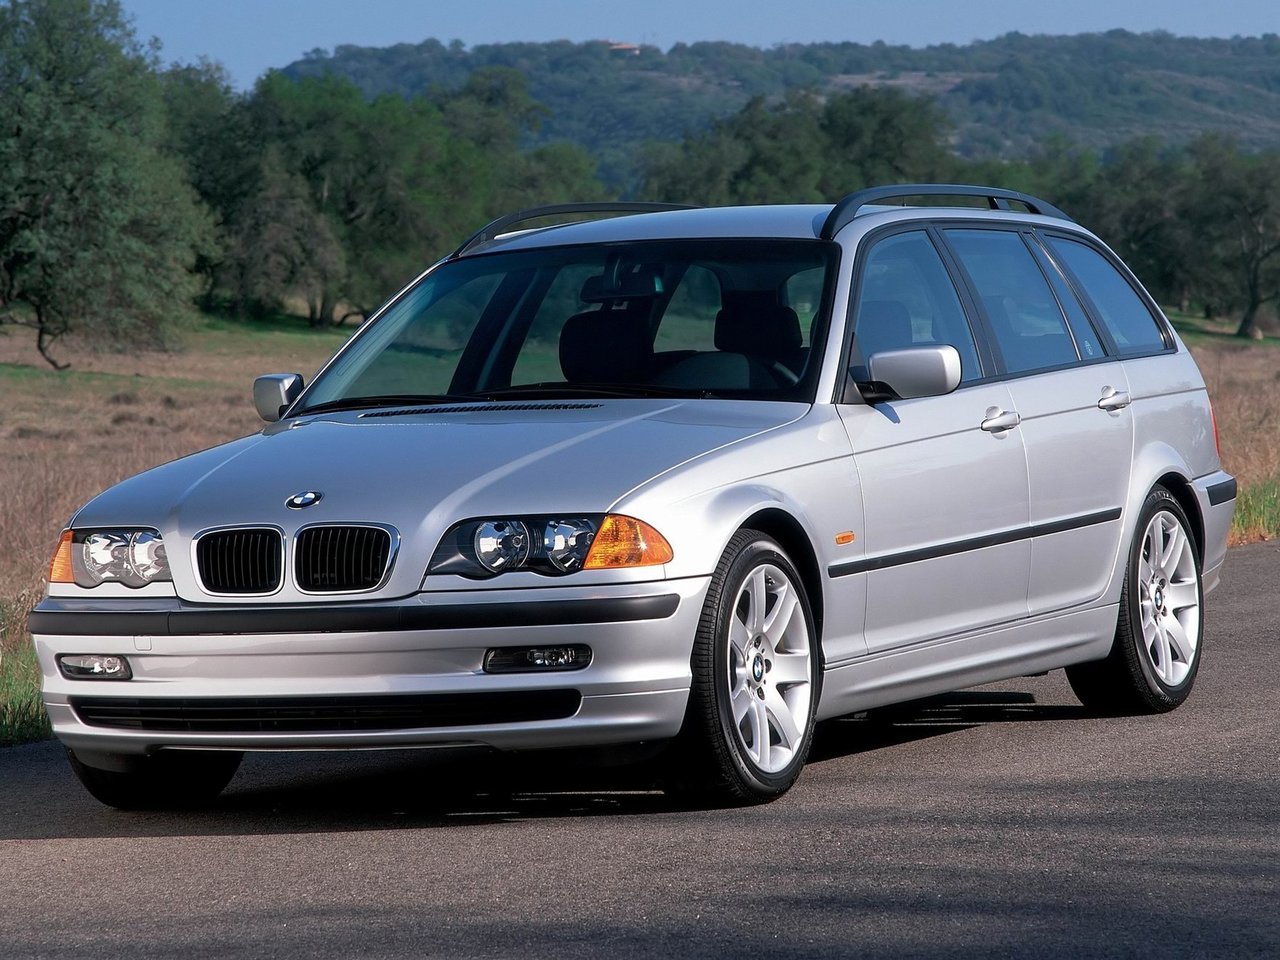 Расход газа двенадцати комплектаций универсала пять дверей BMW 3 серия. Разница стоимости заправки газом и бензином. Автономный пробег до и после установки ГБО.